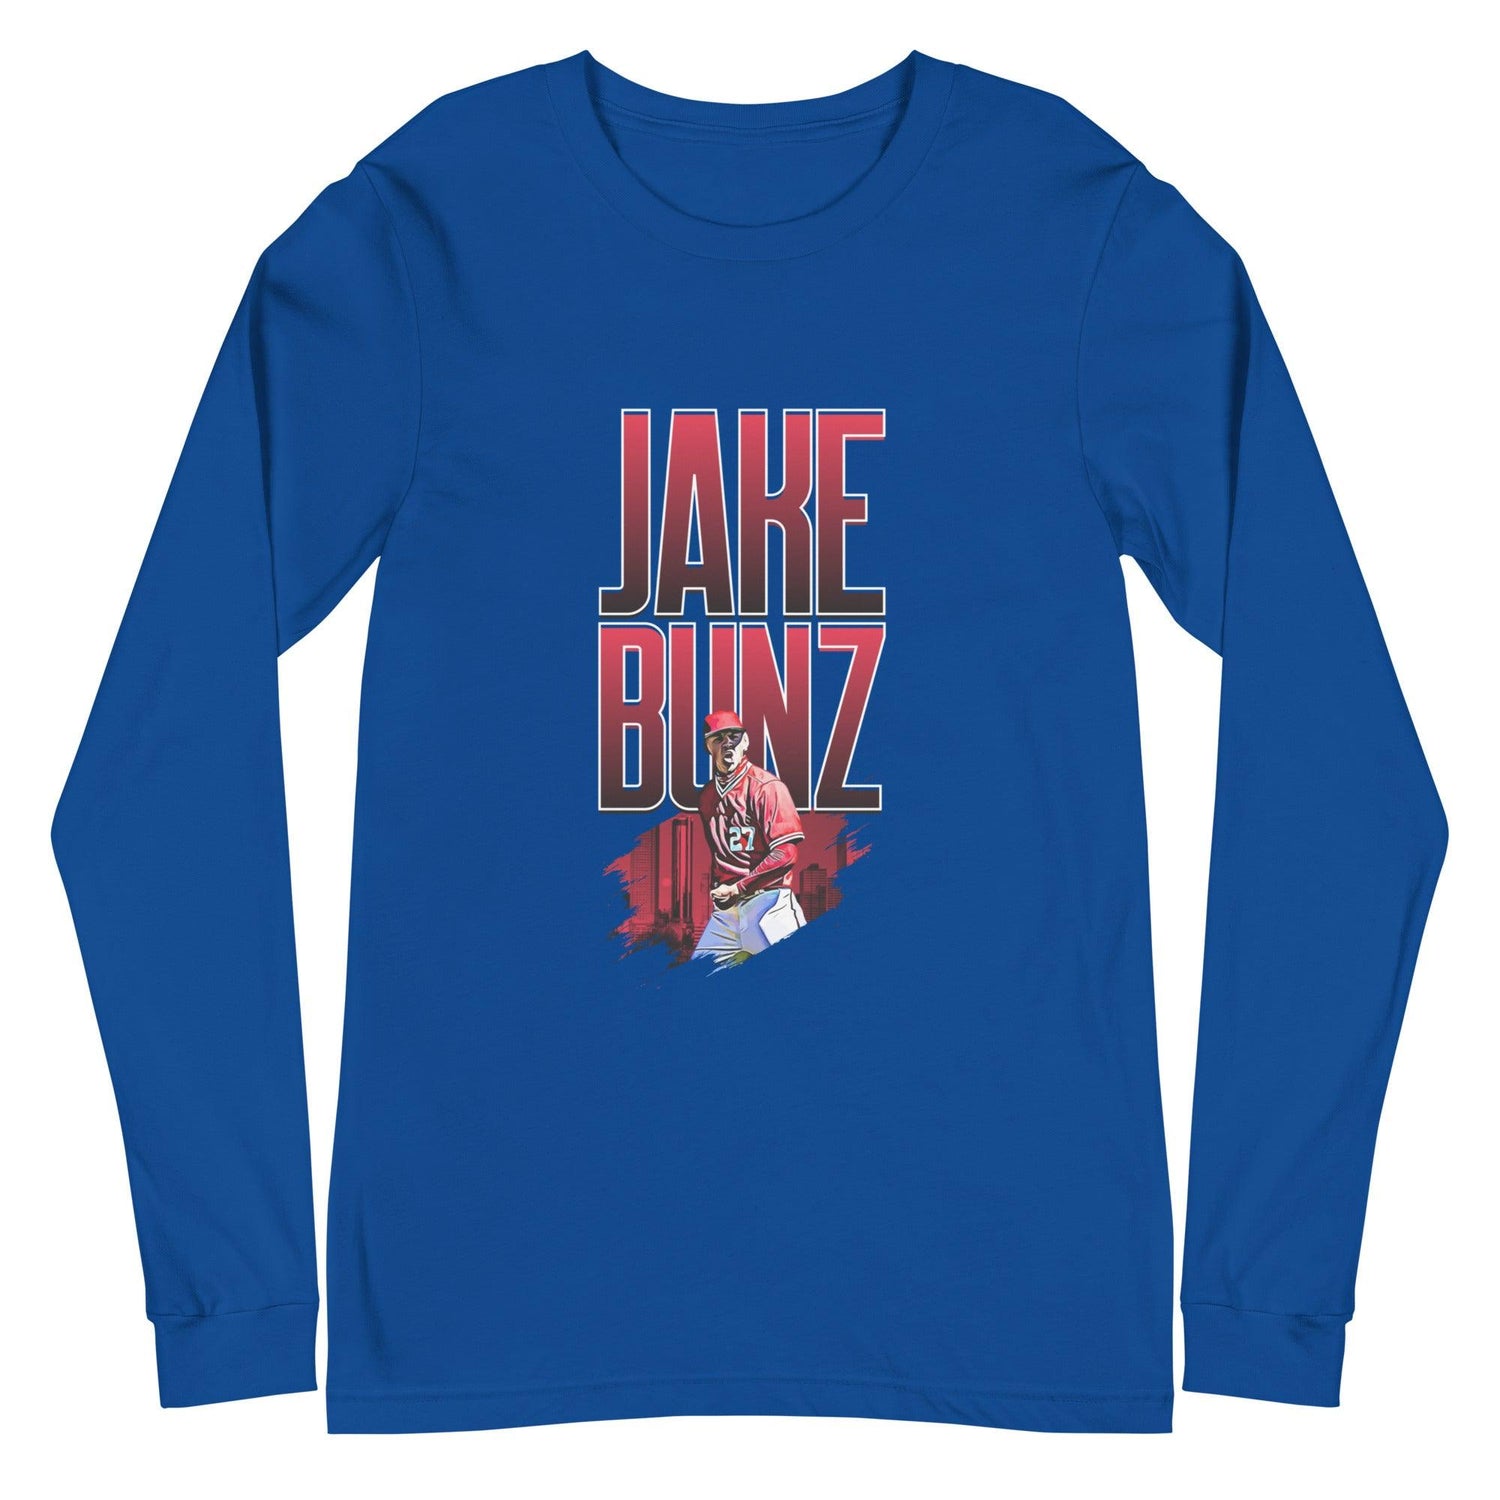 Jake Bunz "Celebrate" Long Sleeve Tee - Fan Arch